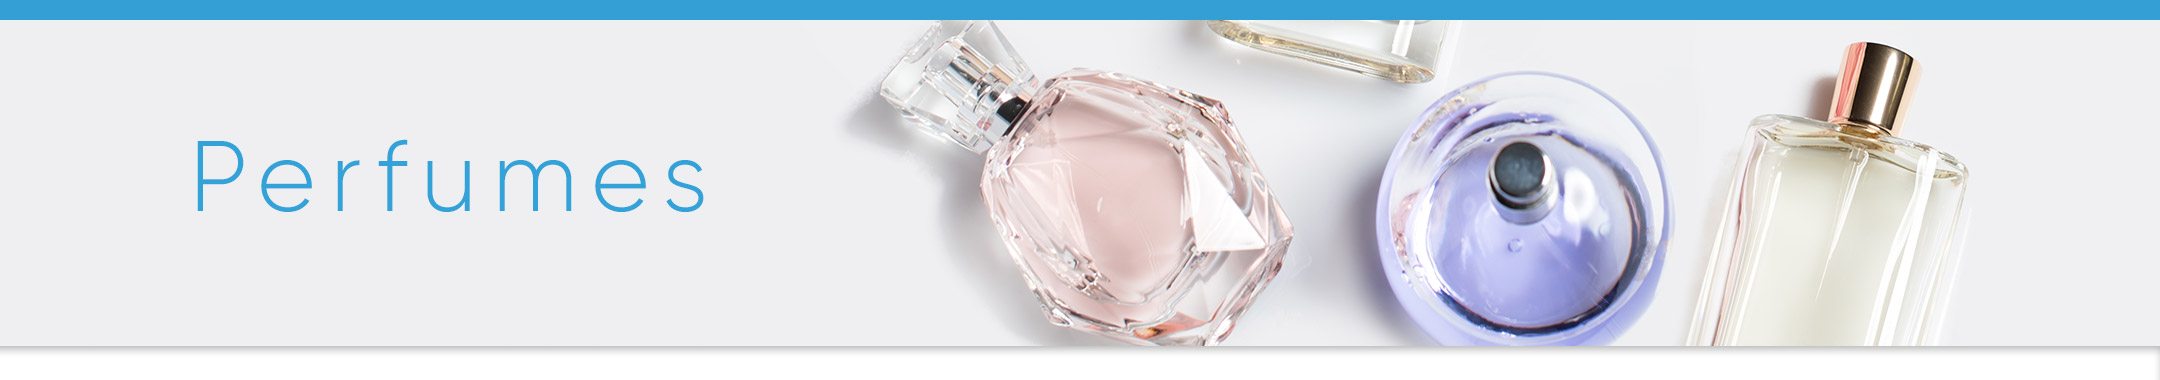 Cosméticos mais procurados nos EUA Perfumes